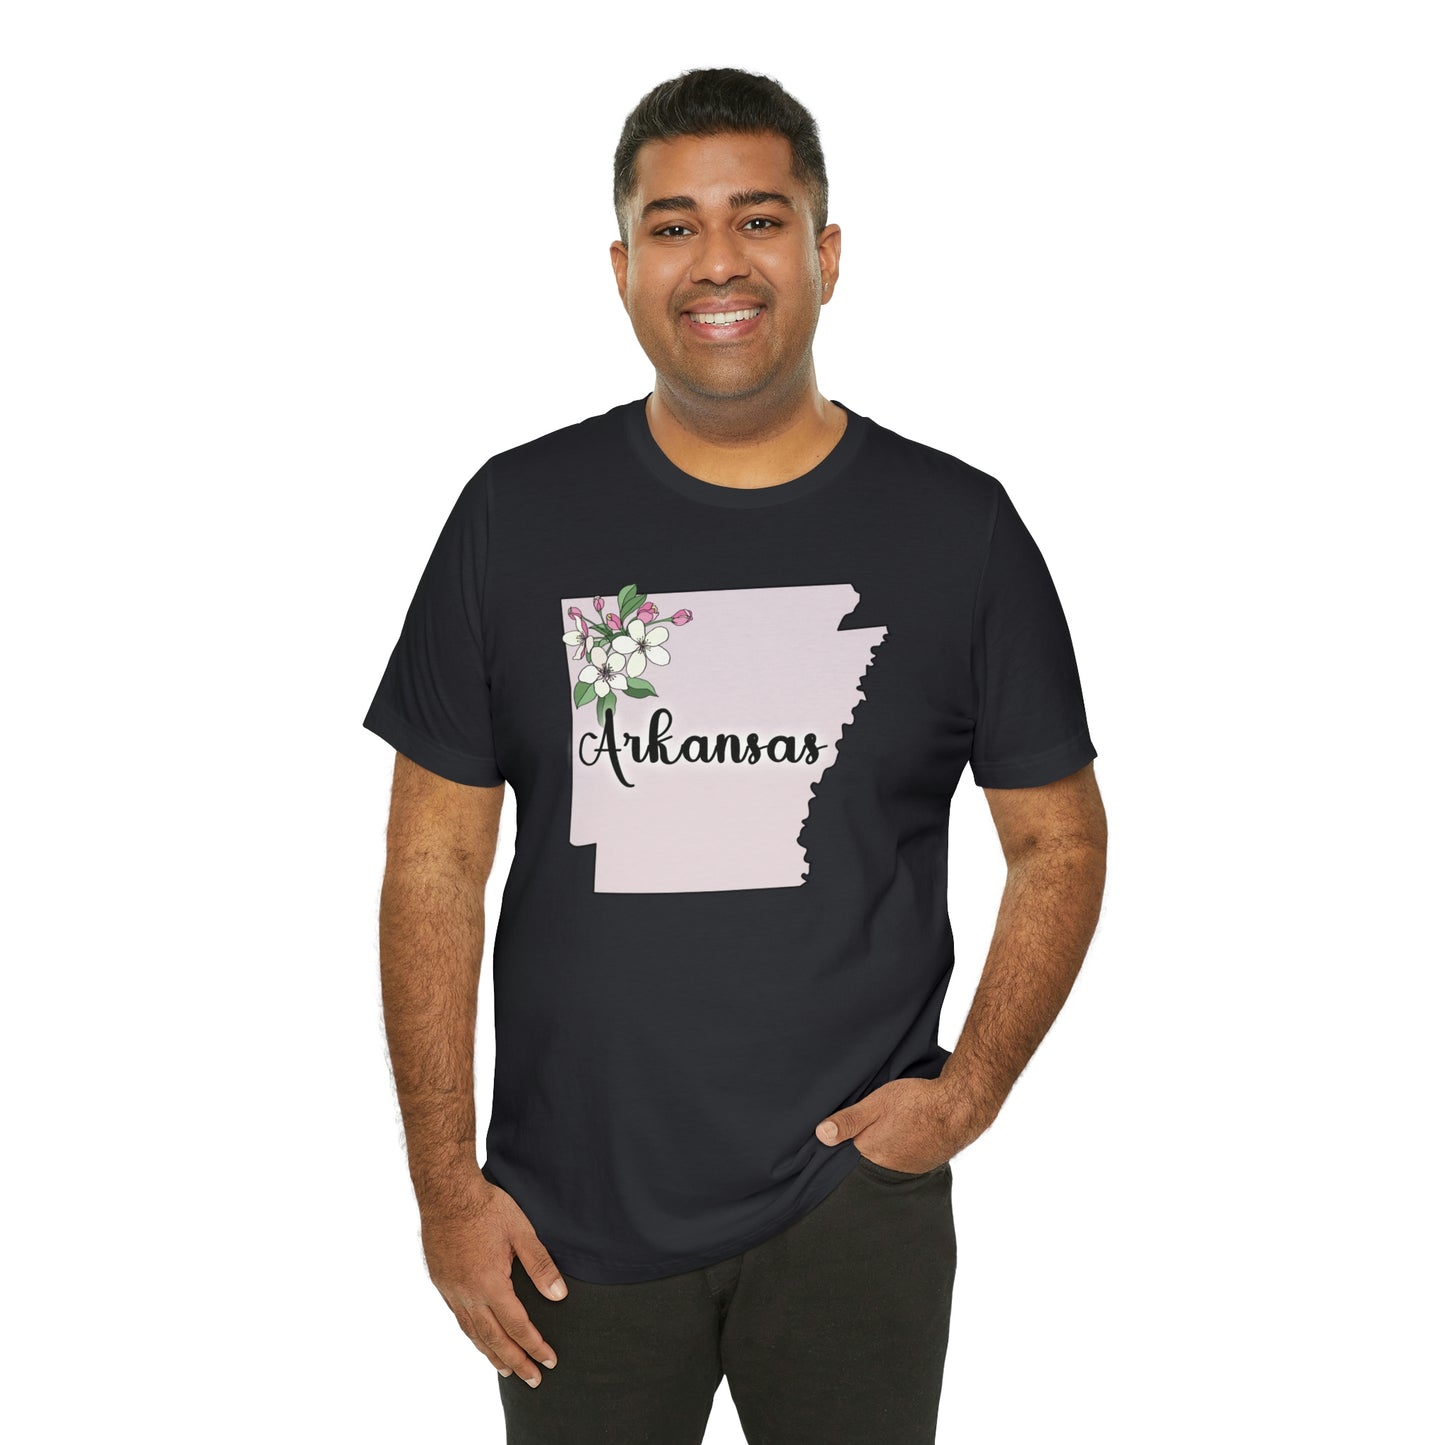 Arkansas State Flower Short Sleeve T-shirt